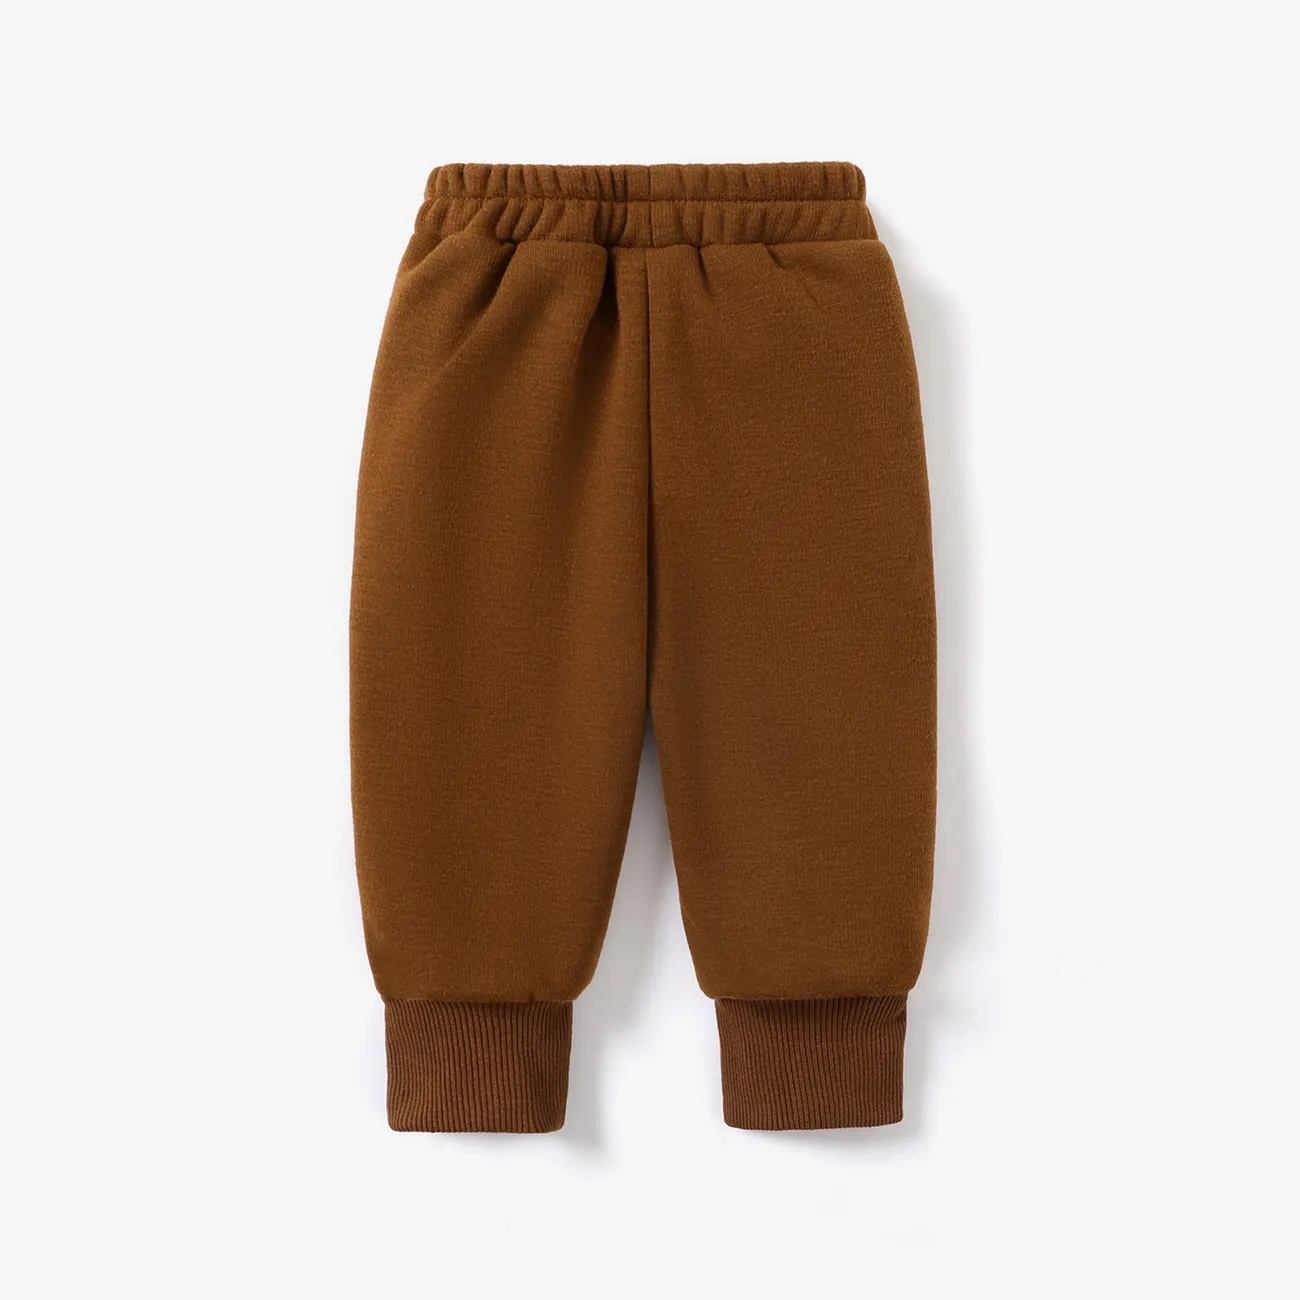 Baby Boy/Girl Solid Casual Pantalones Marrón big image 1